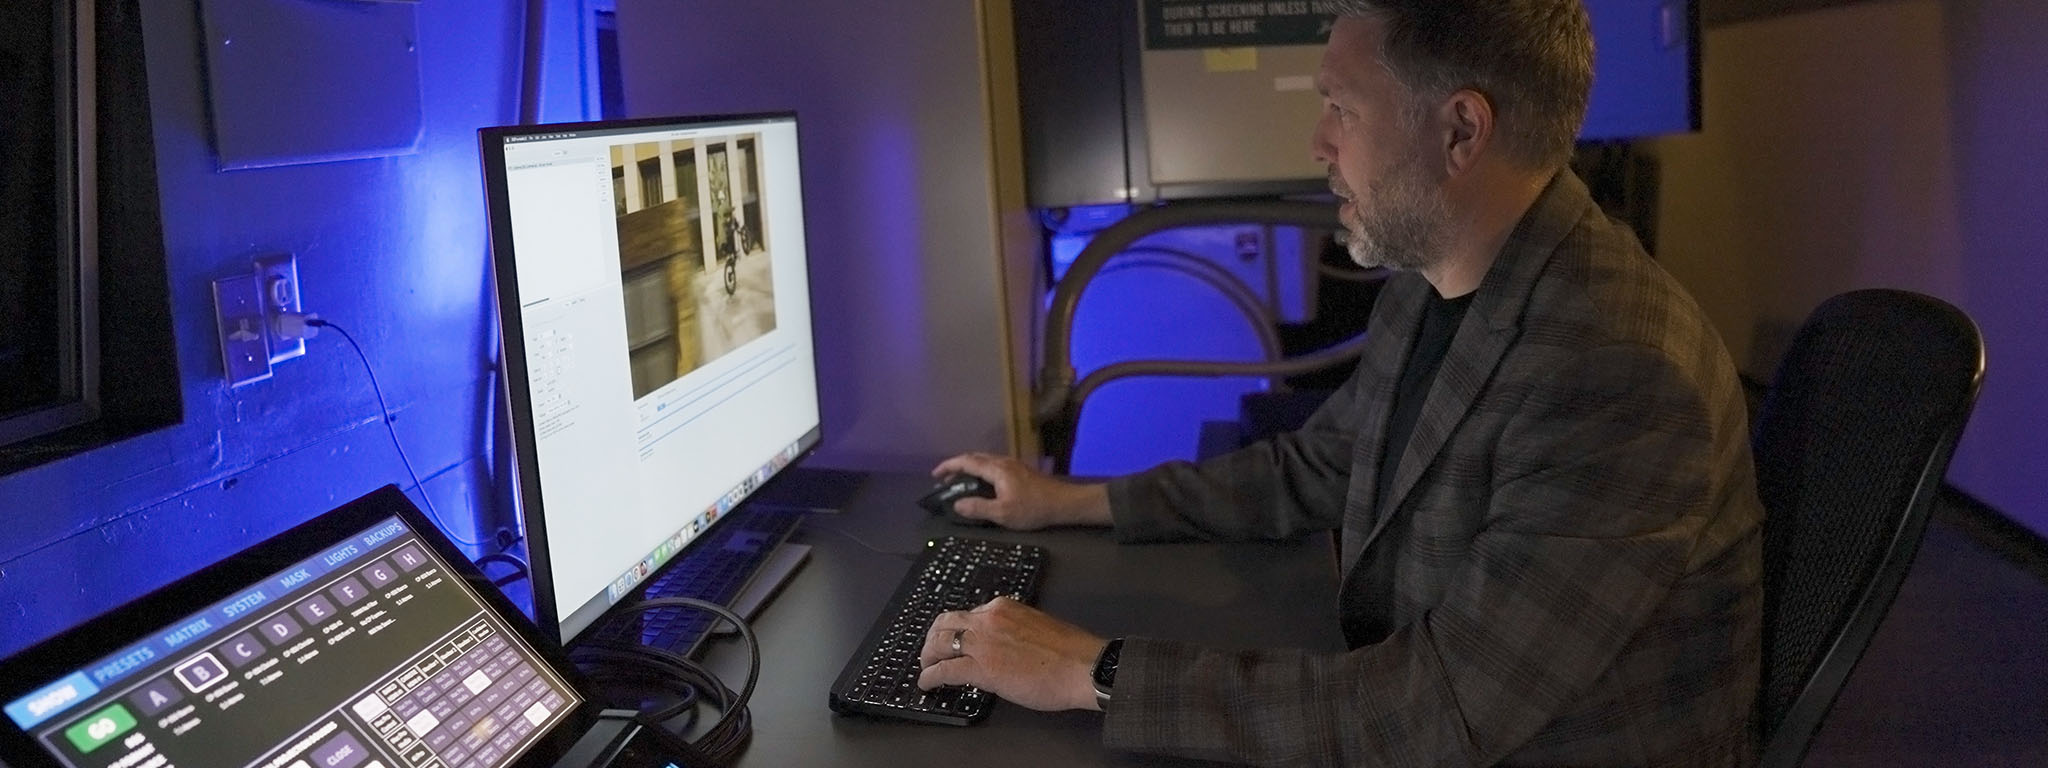 Chuyên viên chiếu phim kỹ thuật số Ryan Carpenter đang thao tác trên màn hình máy tính.